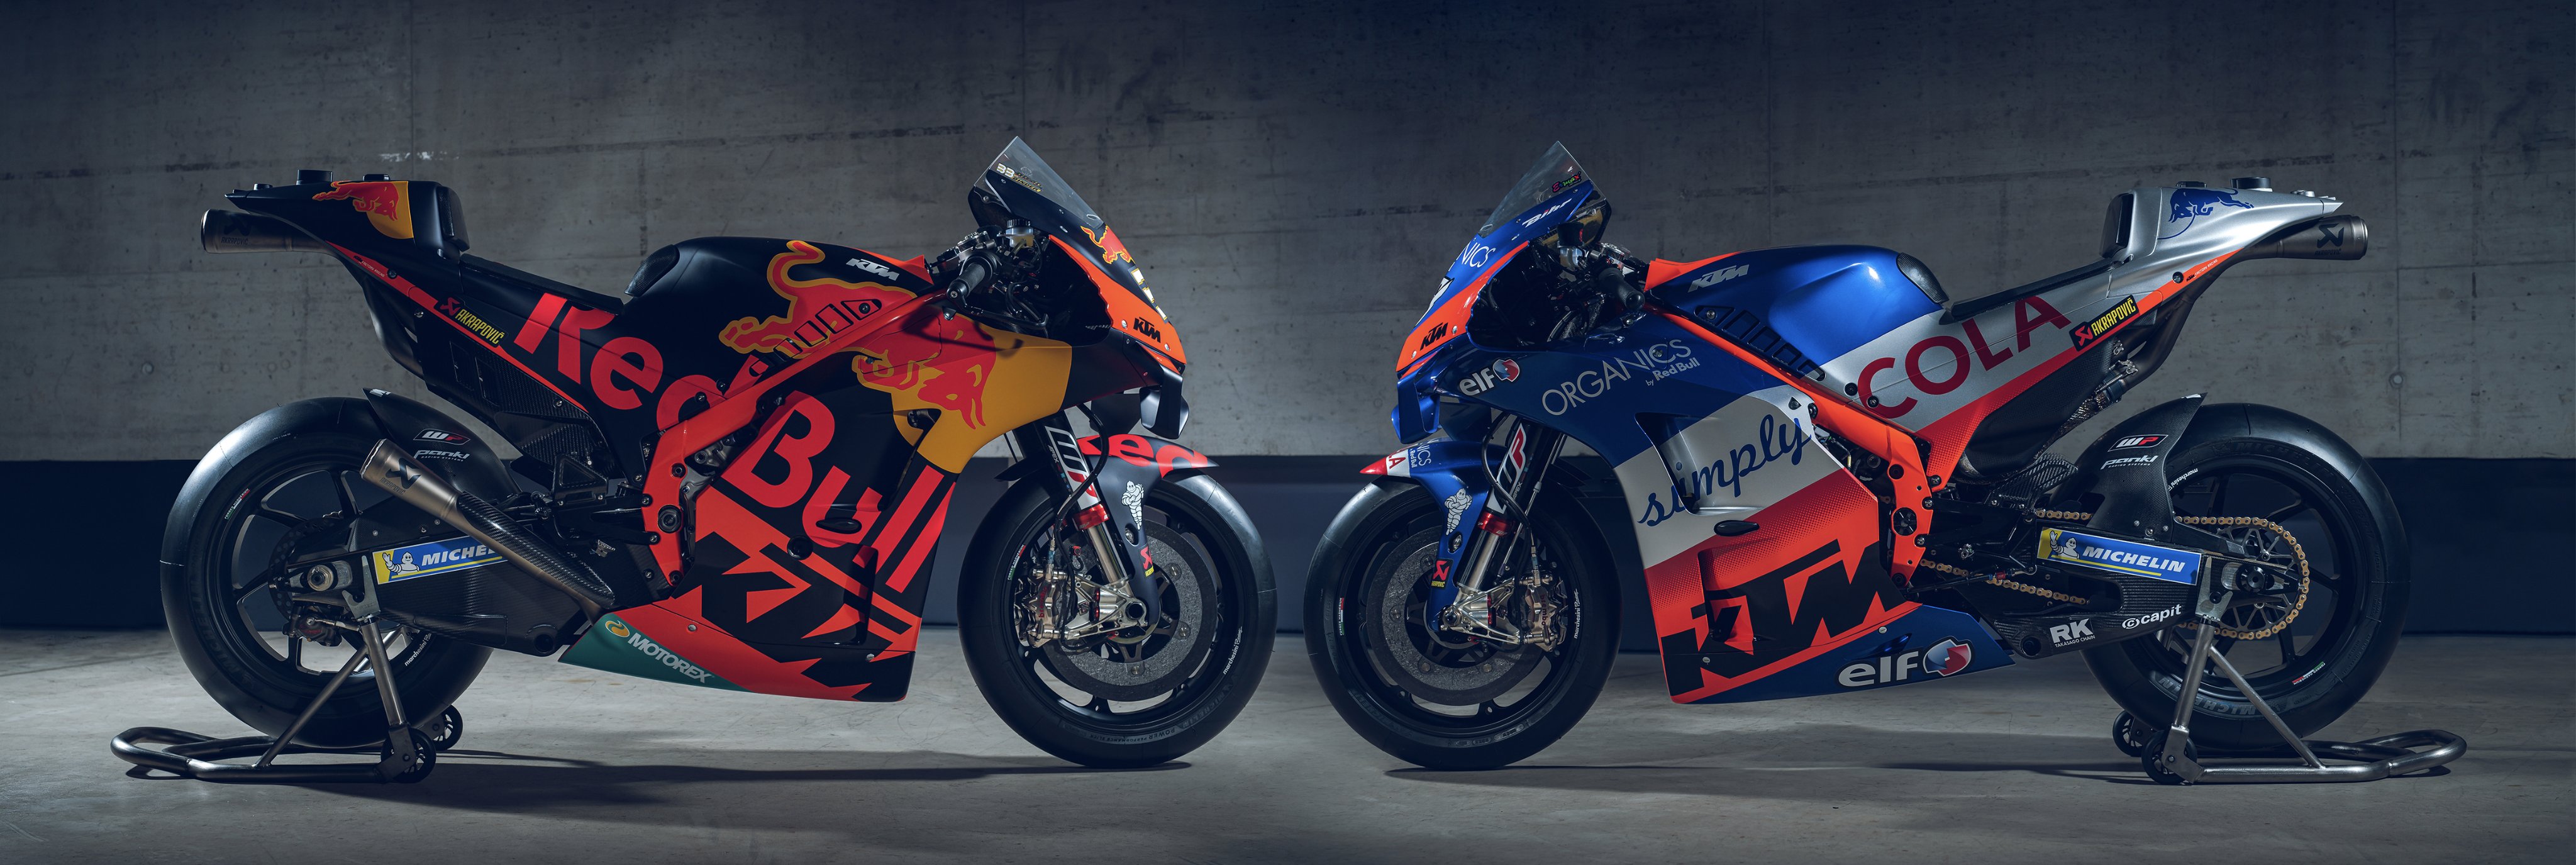 KTM Perpanjang Kontrak dengan MotoGP hingga 2026